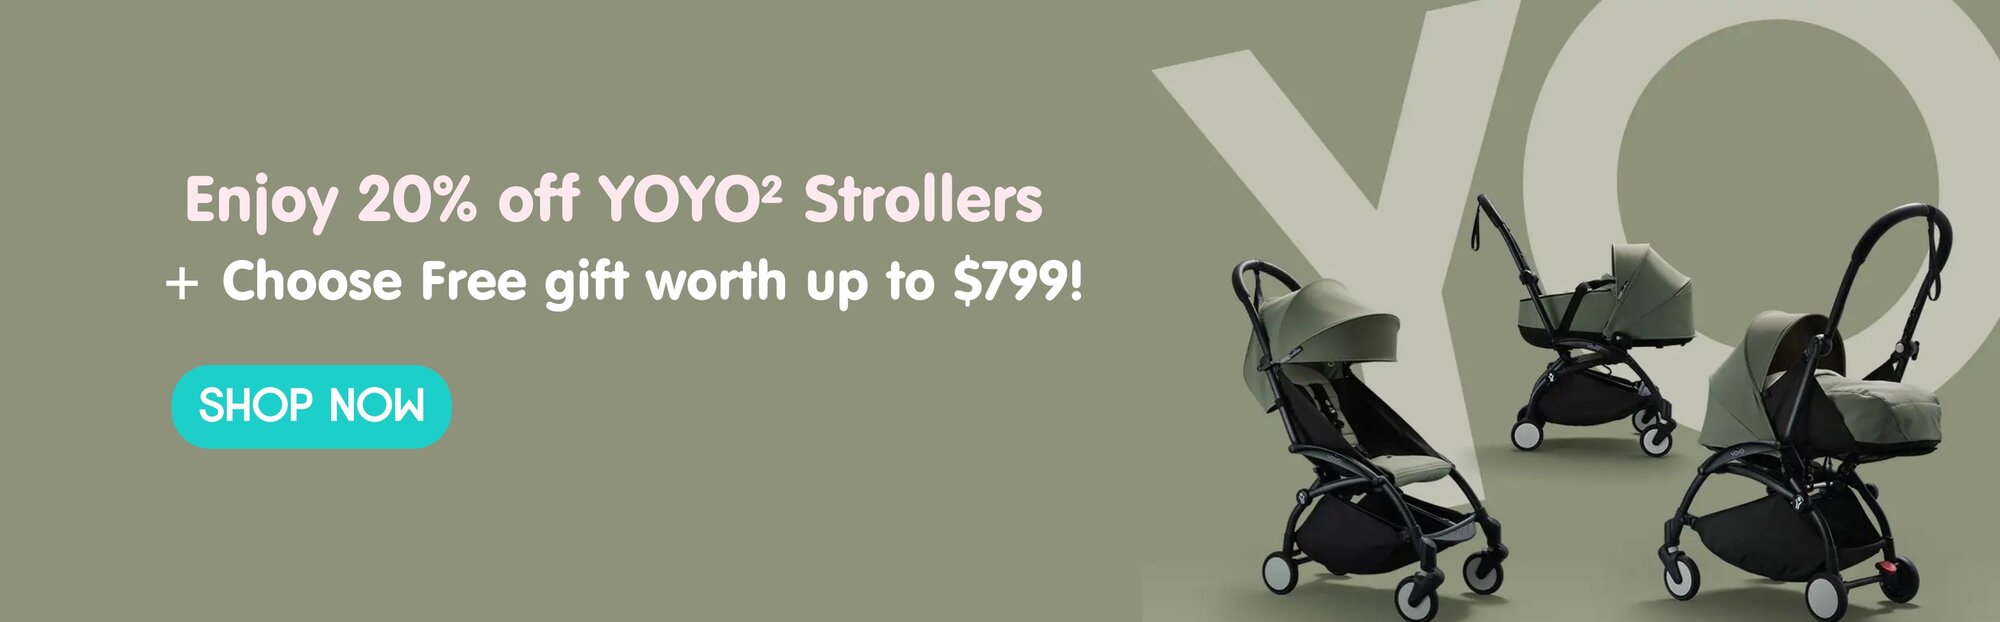 20% off YOYO² Strollers